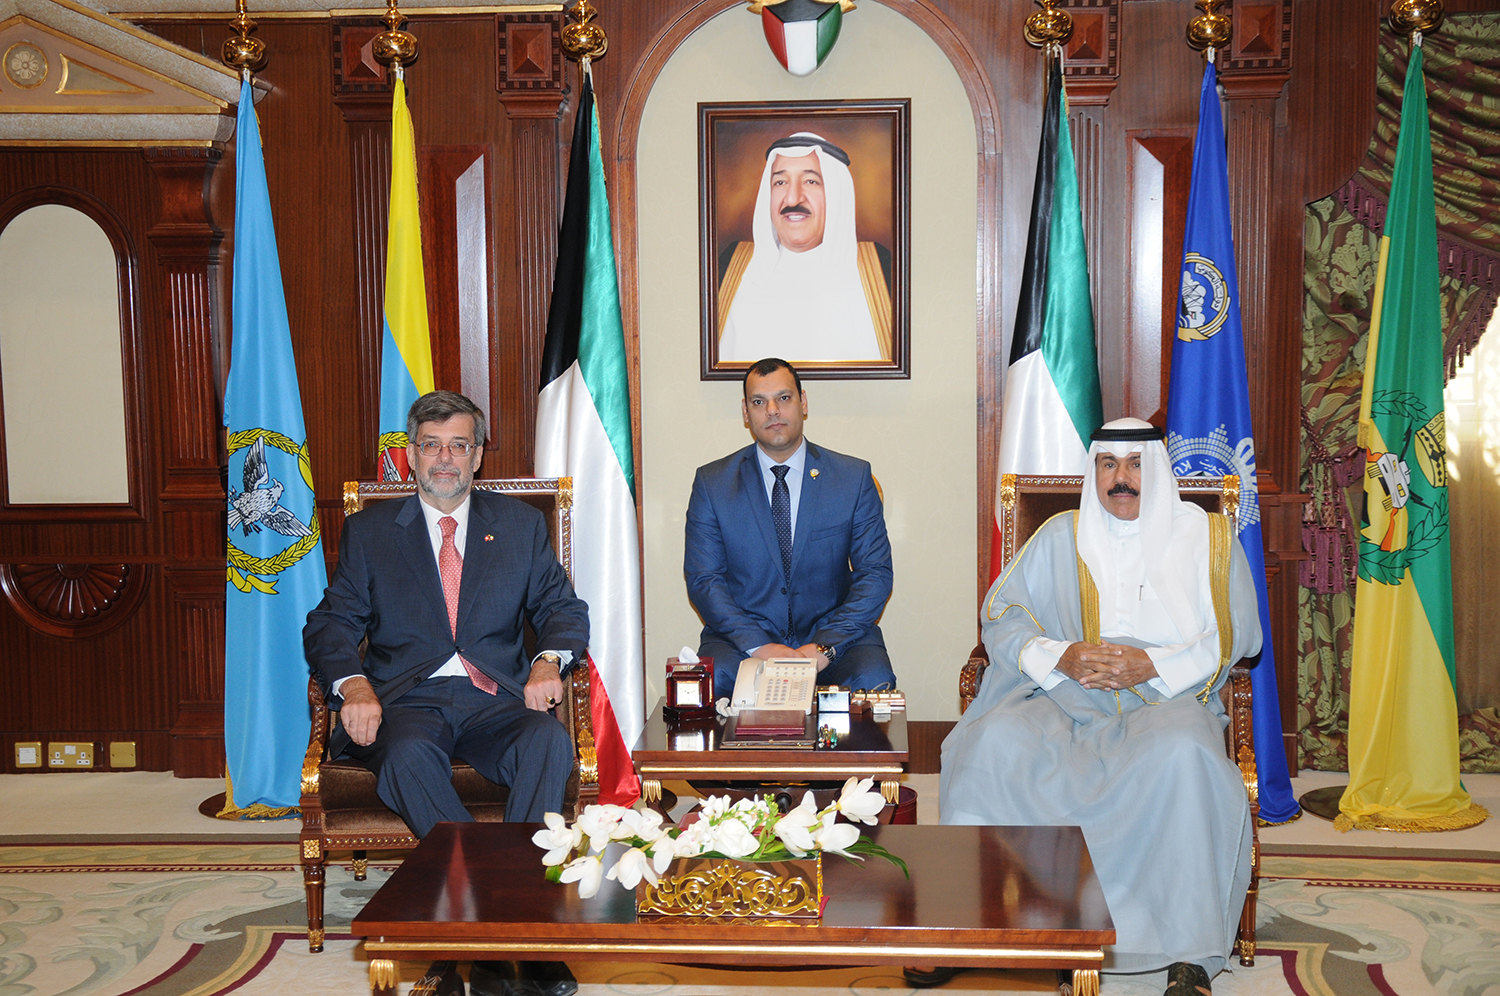 His Highness the Amir Sheikh Sabah Al-Ahmad Al-Jaber Al-Sabah received the Ambassador of Switzerland to Kuwait Etienne Thevoz